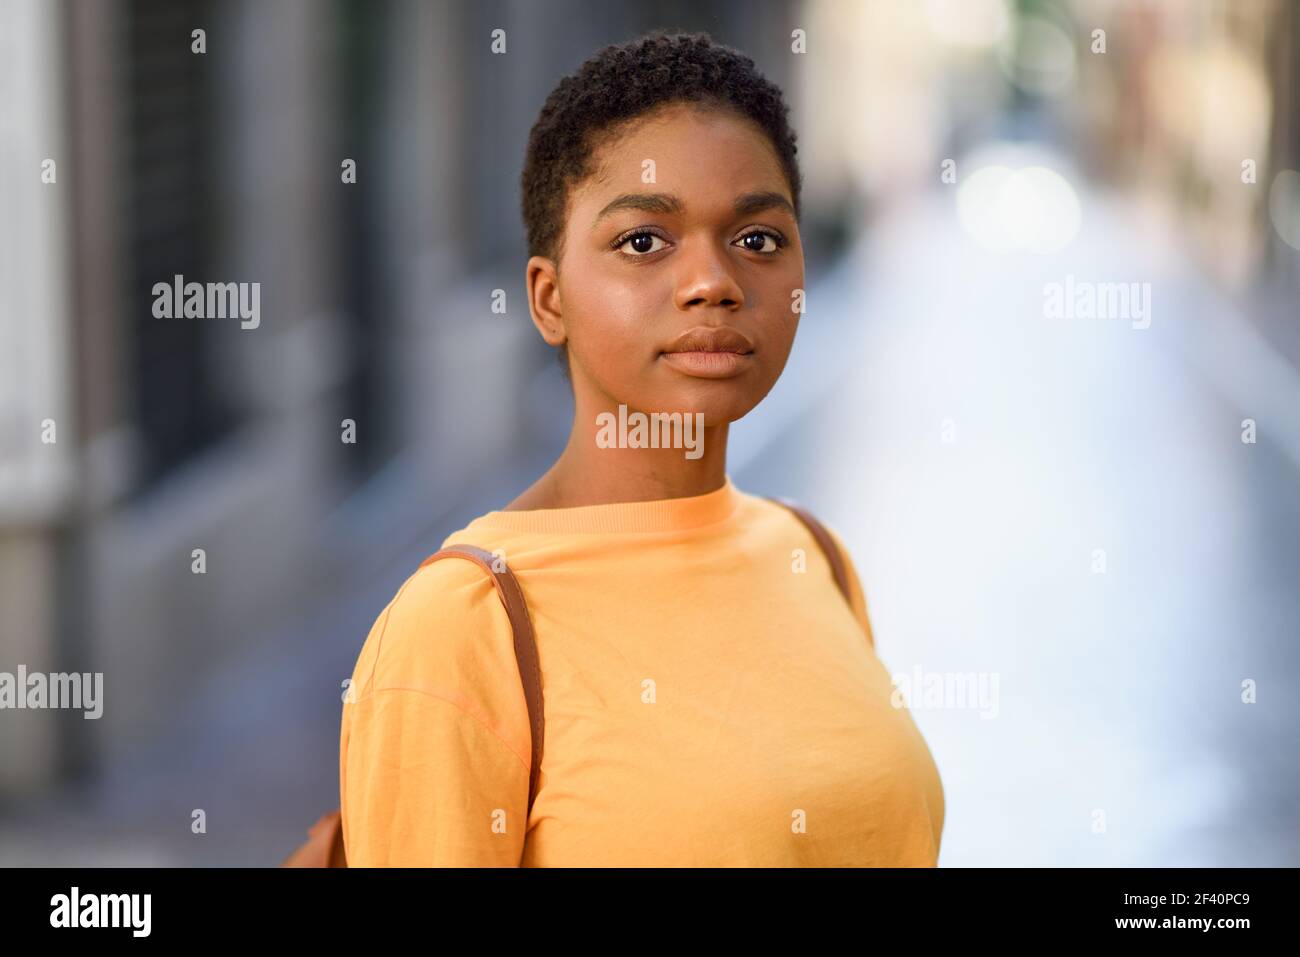 Junge afrikanische Frau trägt Freizeitkleidung Blick auf Kamera. Mädchen mit sehr kurzen Haaren.. Junge afrikanische Frau trägt Freizeitkleidung Blick auf Kamera. Stockfoto